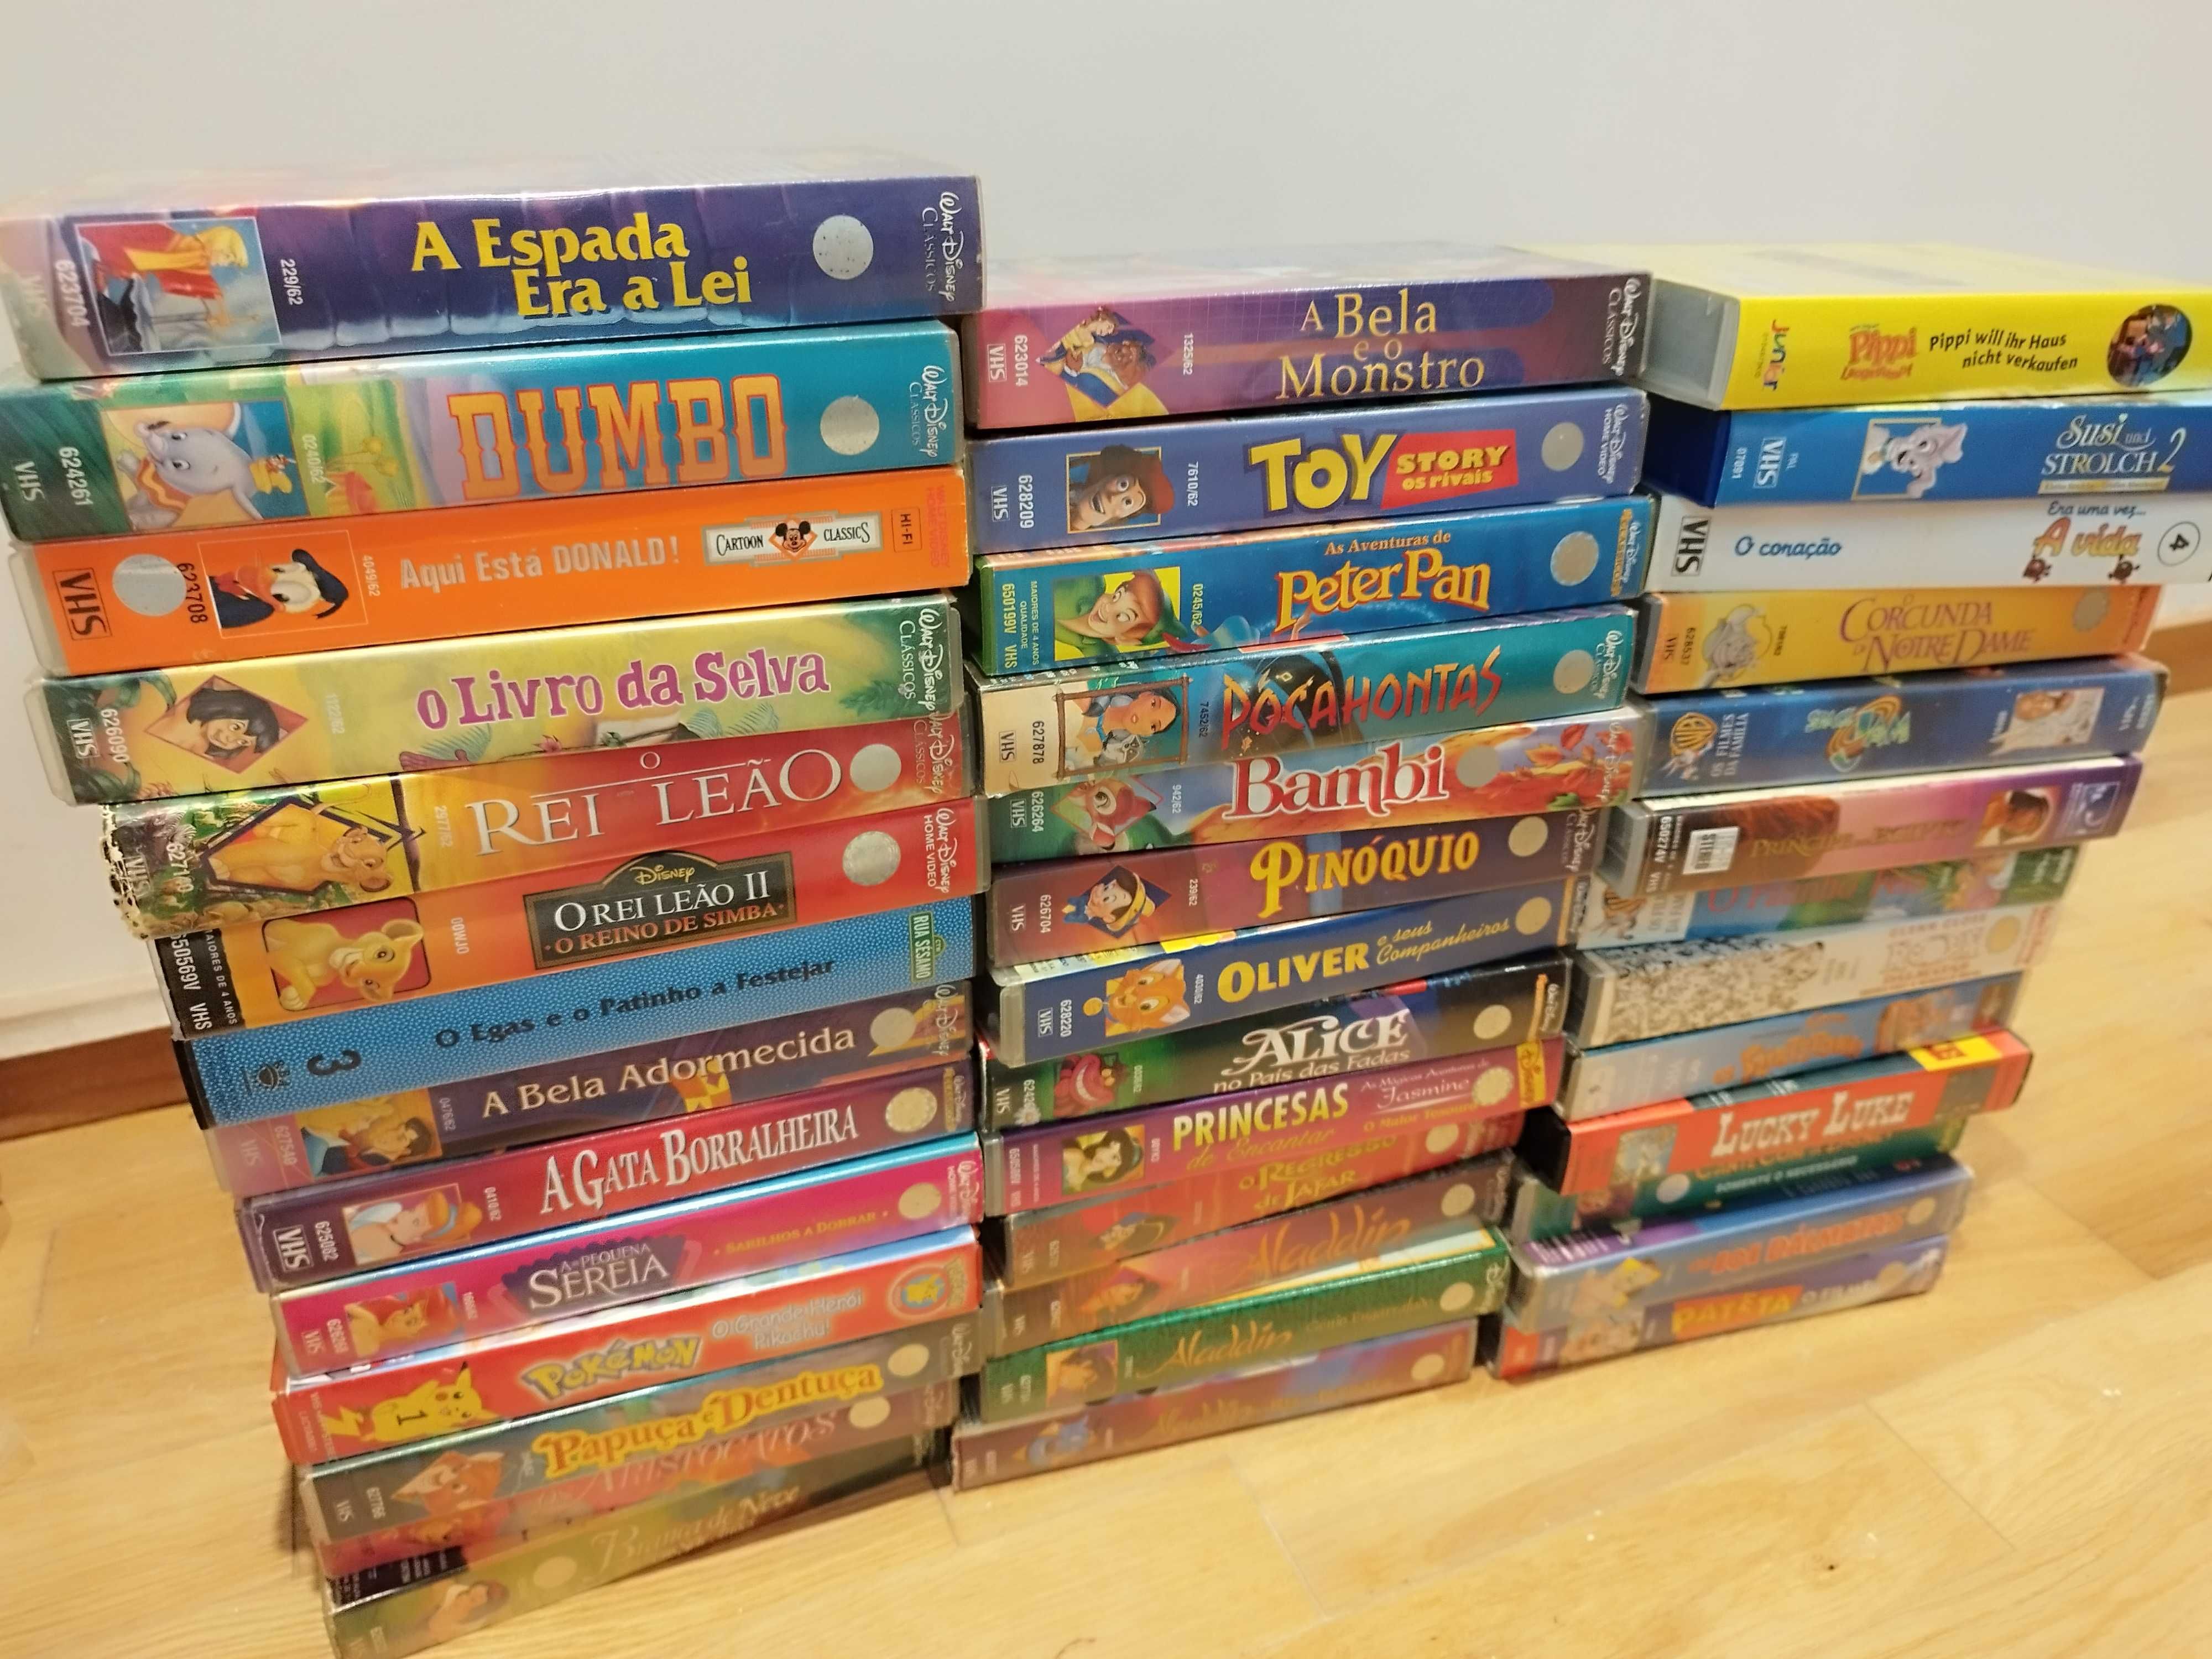 38 cassetes VHS português + 2 cassetes VHS alemão (maioria Disney)